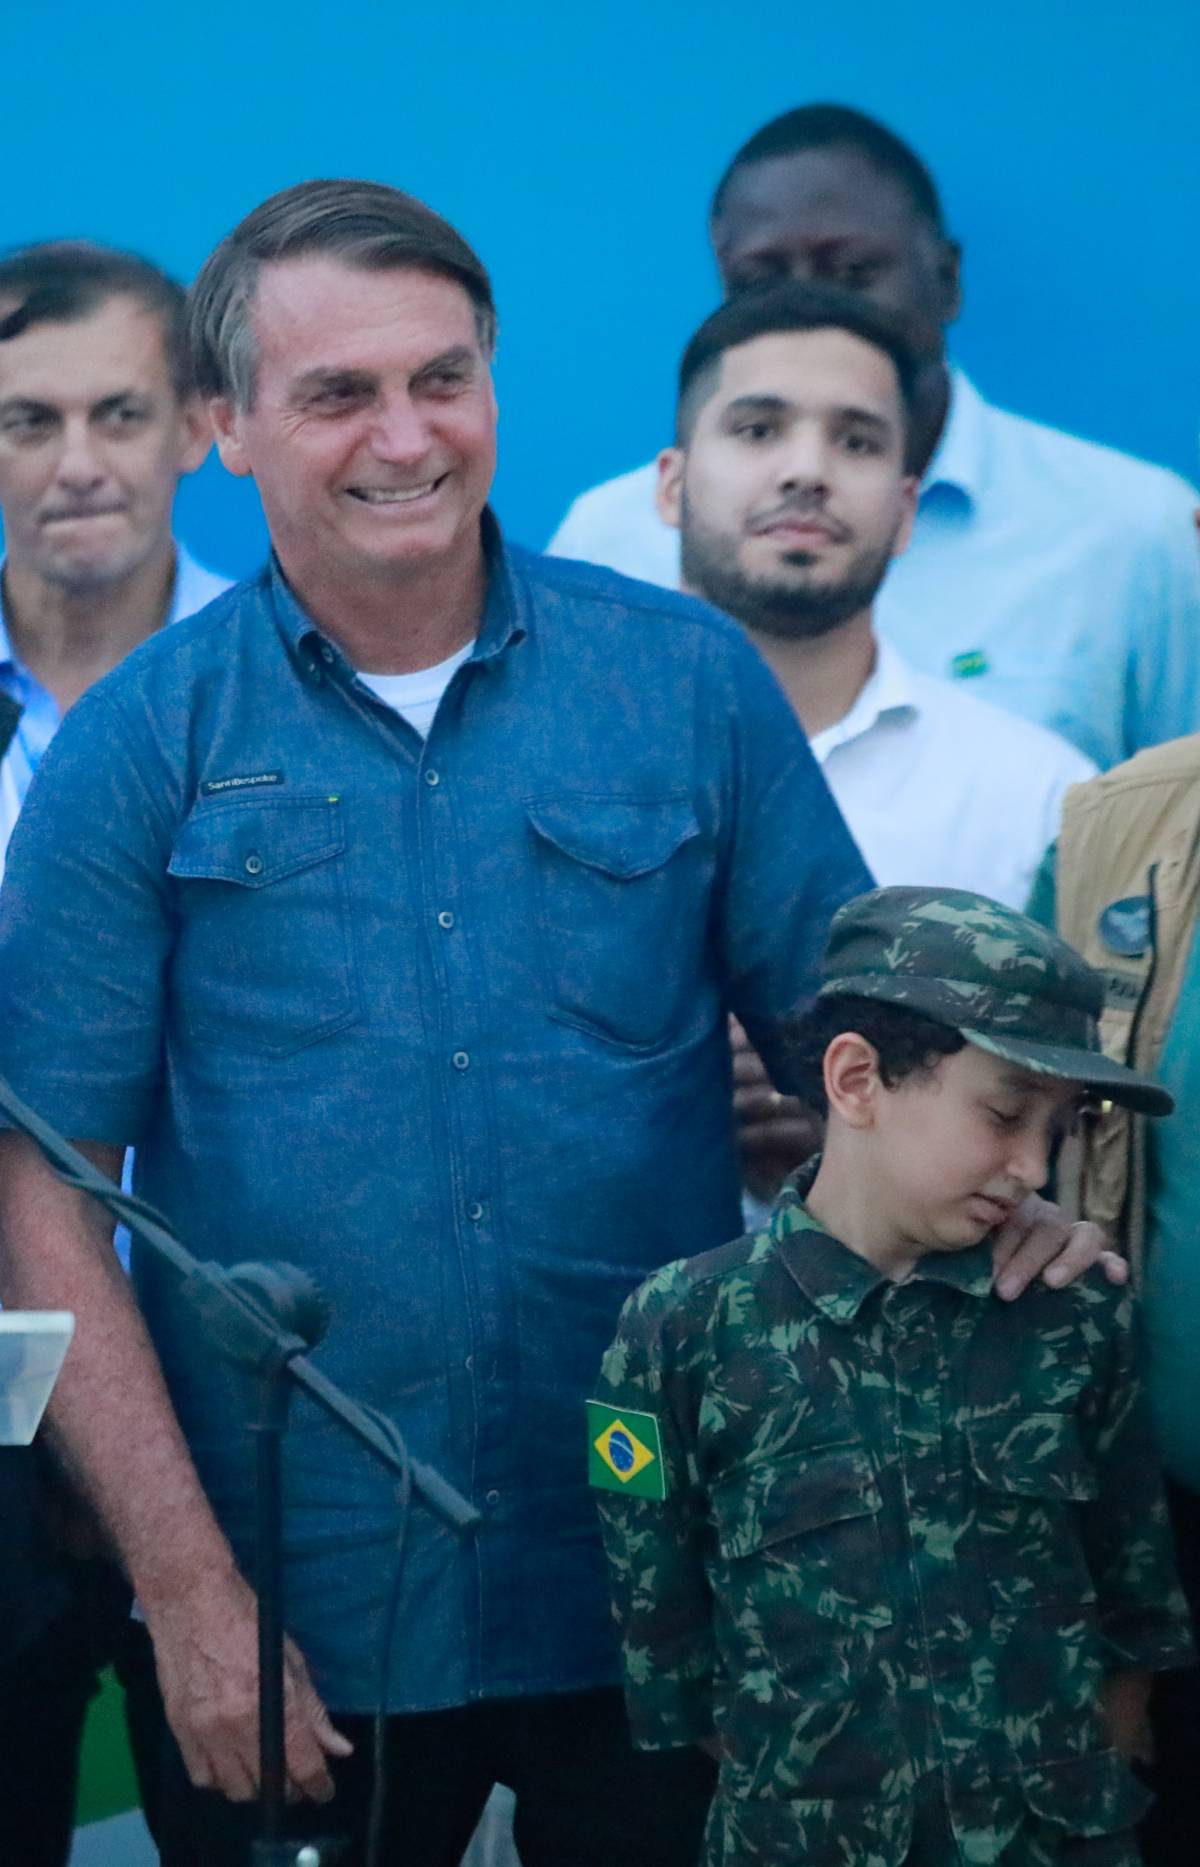 Bolsonaro ricoverato. "Problemi dopo la coltellata"